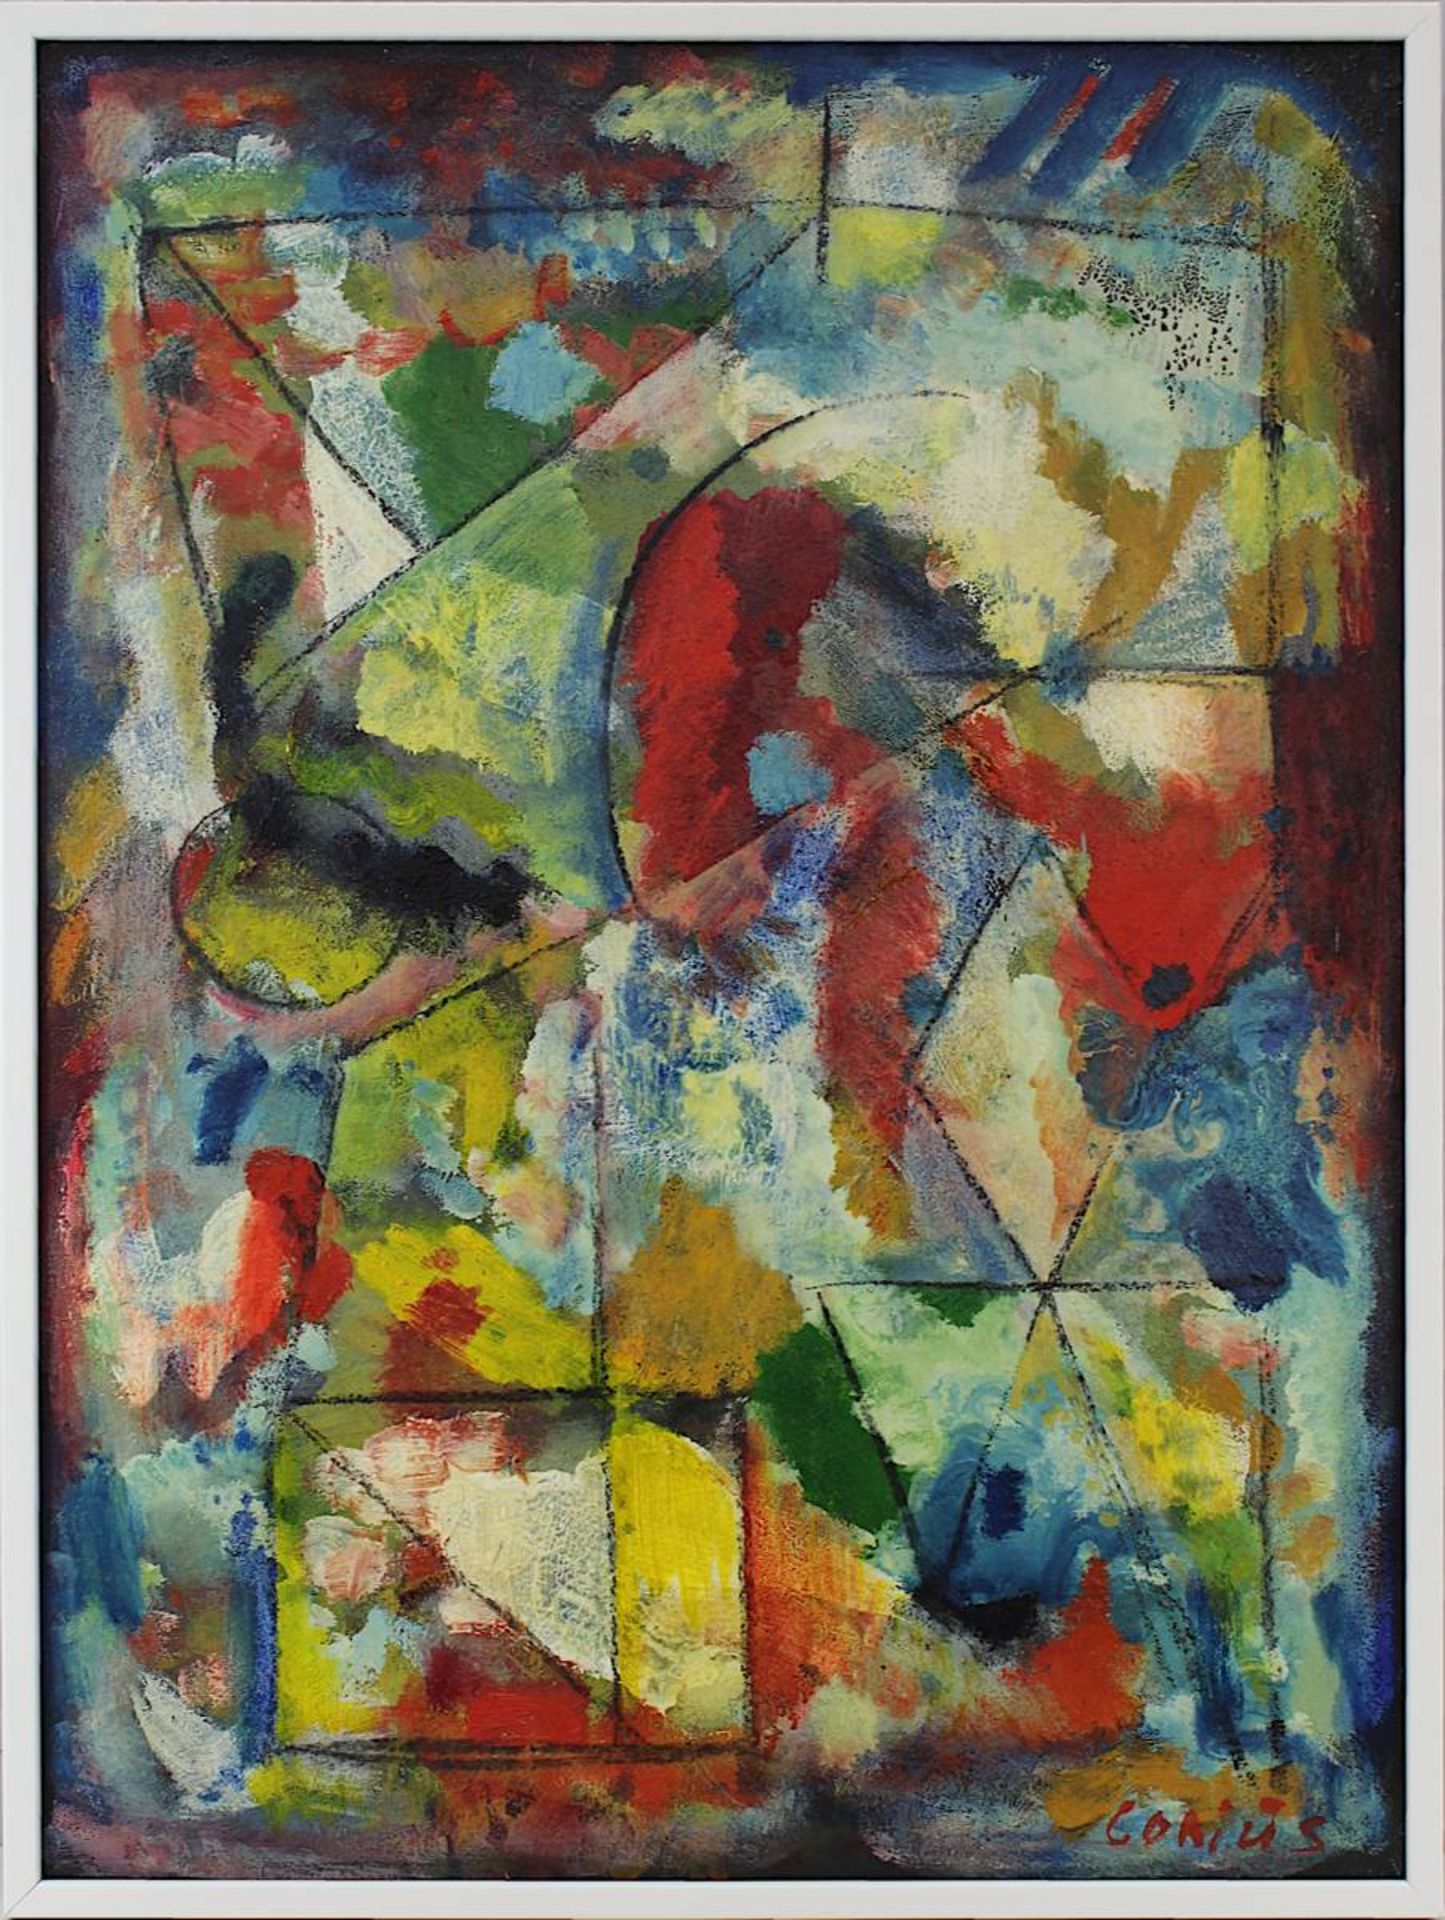 Gorius, Wolfgang (Hagen 1932 - 2003 Saarbrücken), Abstrakte Komposition mit geometrischen Formen, Öl